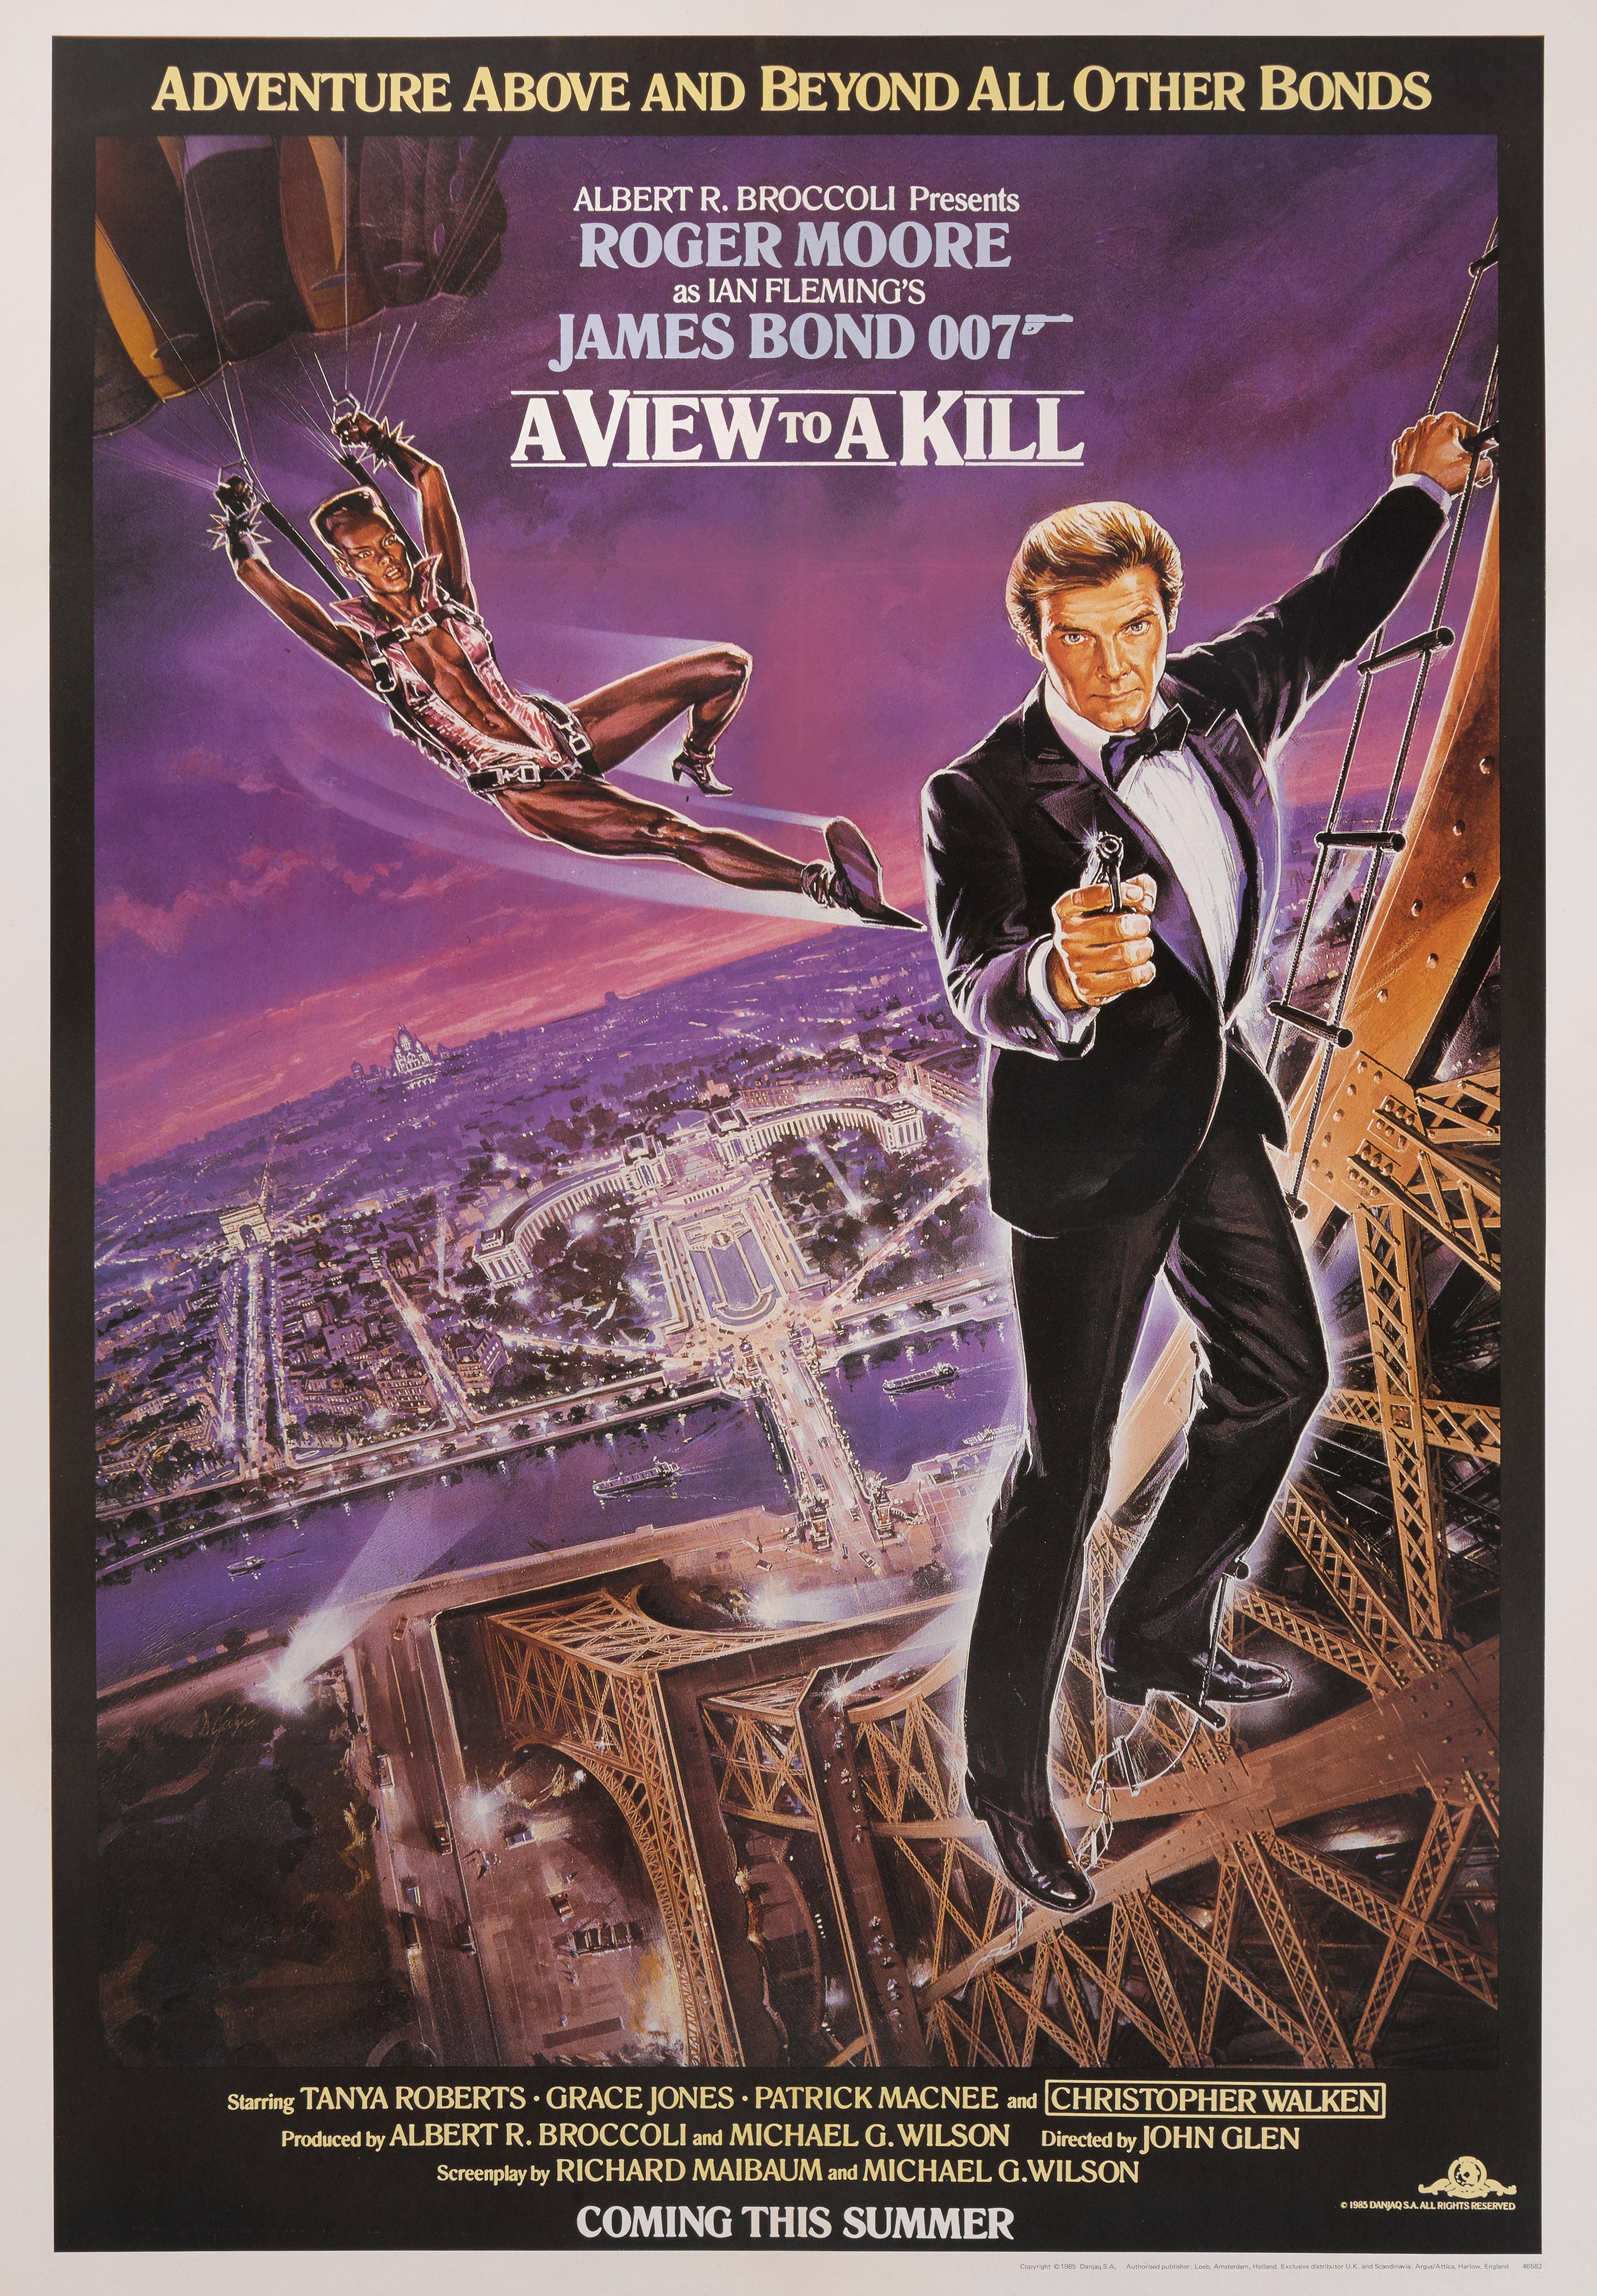 Affiche originale de style violet pour le film Bond 1985 de Roger Moore et Grace Jones.
Ce film a été réalisé par John Glen.
Cette affiche est doublée de lin de conservation. Elle sera expédiée roulée dans un tube solide et expédiée par Federal